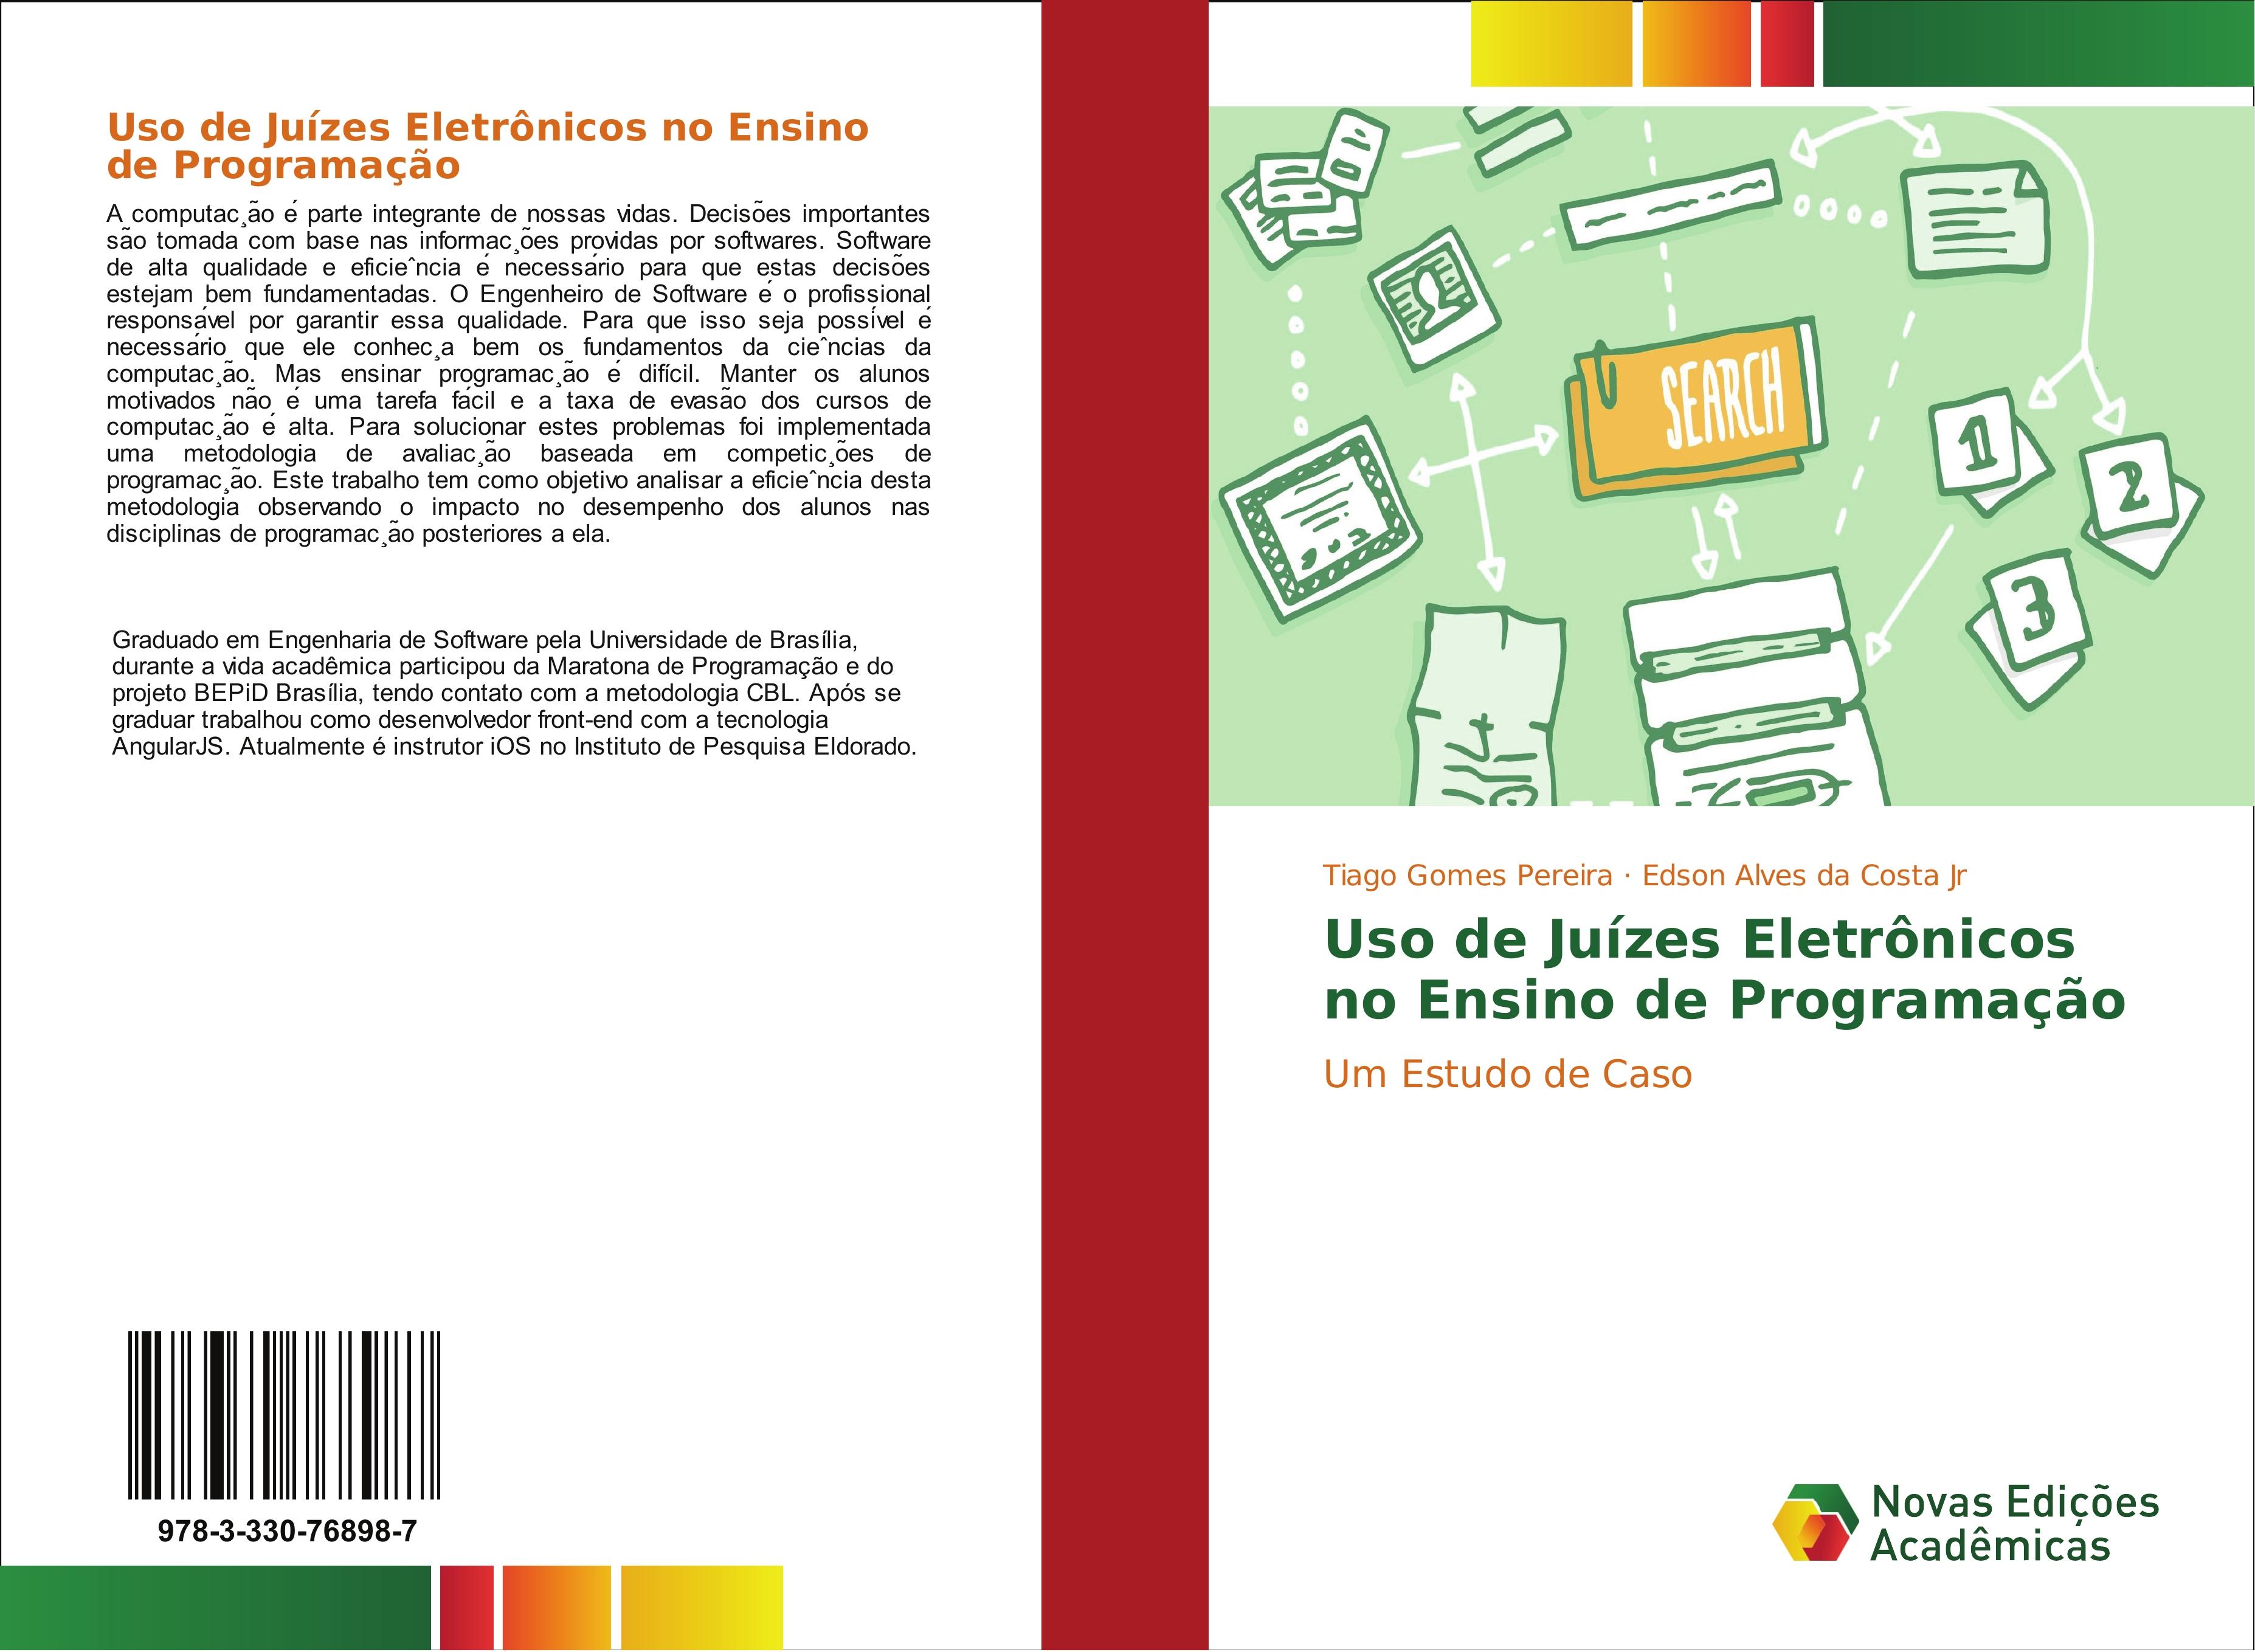 Uso de Juízes Eletrônicos no Ensino de Programação - Tiago Gomes Pereira Edson Alves da Costa Jr